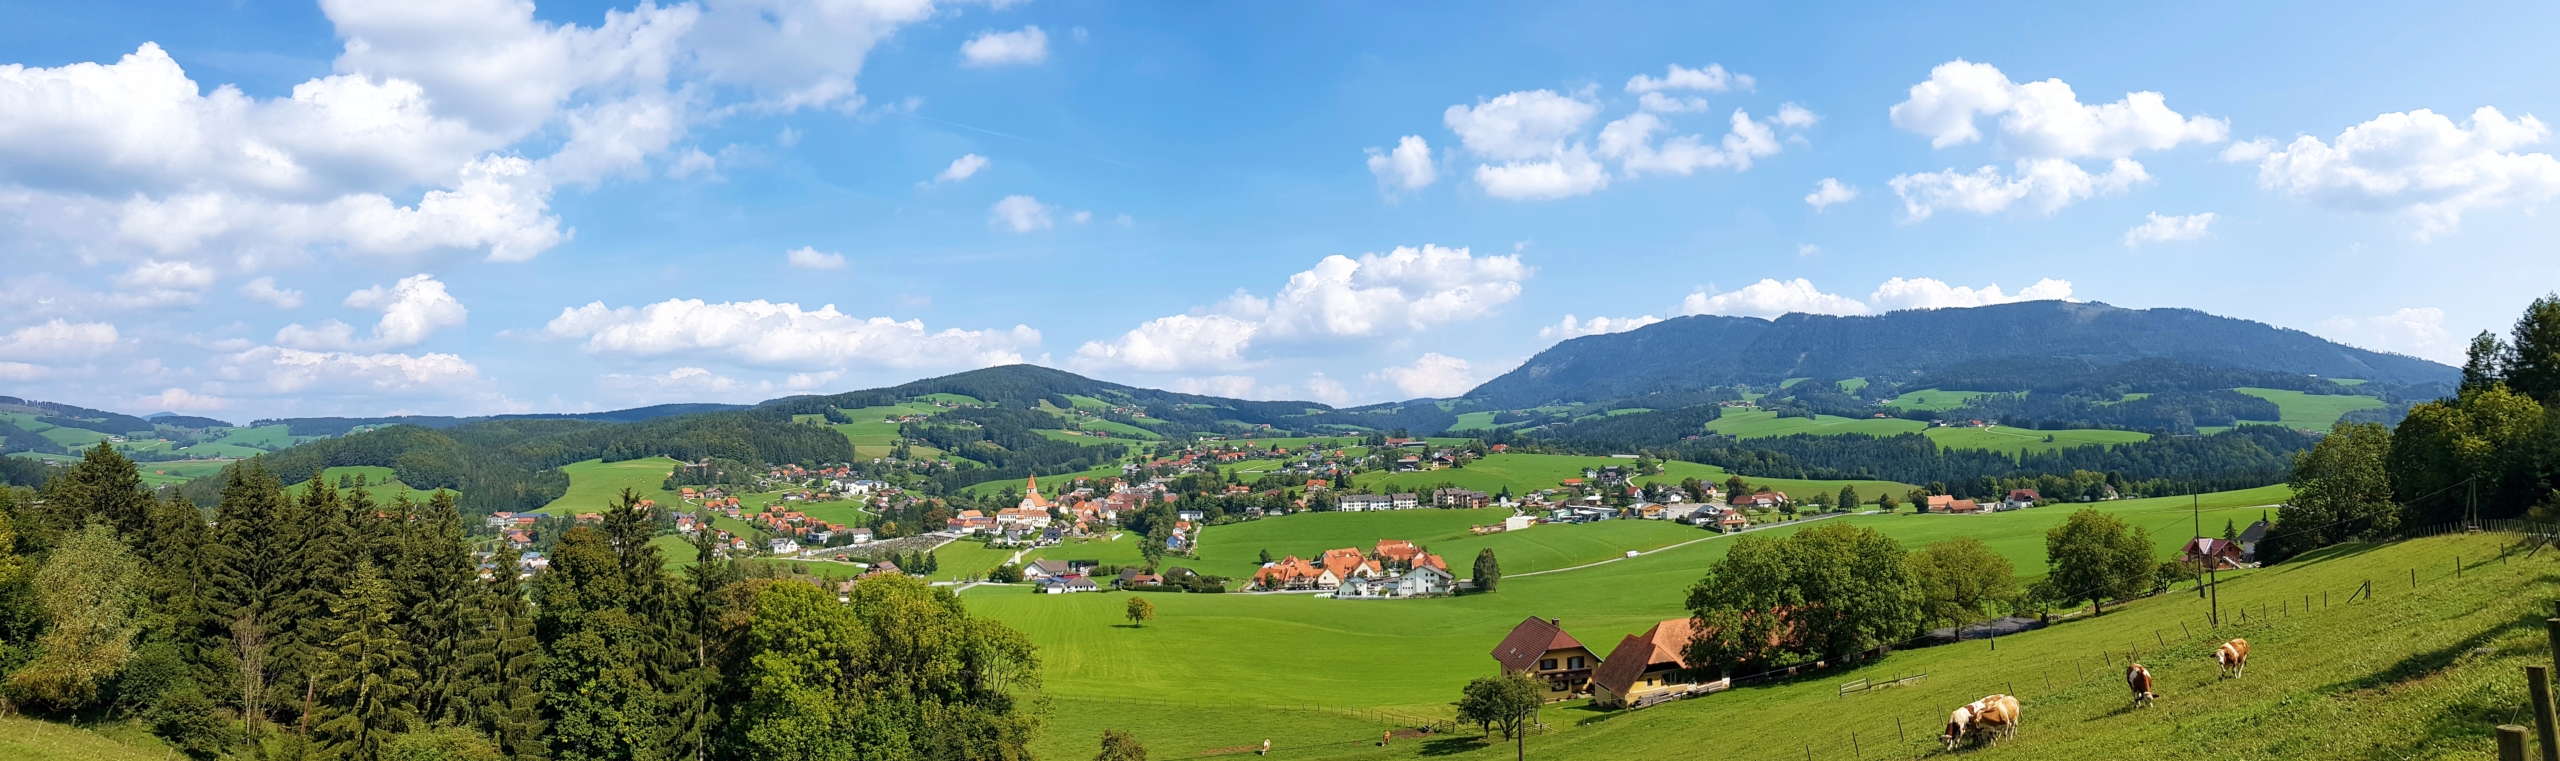 Panoramablick auf Semriach, Österreich, mit grünen Feldern, Häusern und dem Schöckl im Hintergrund unter einem blauen Himmel.